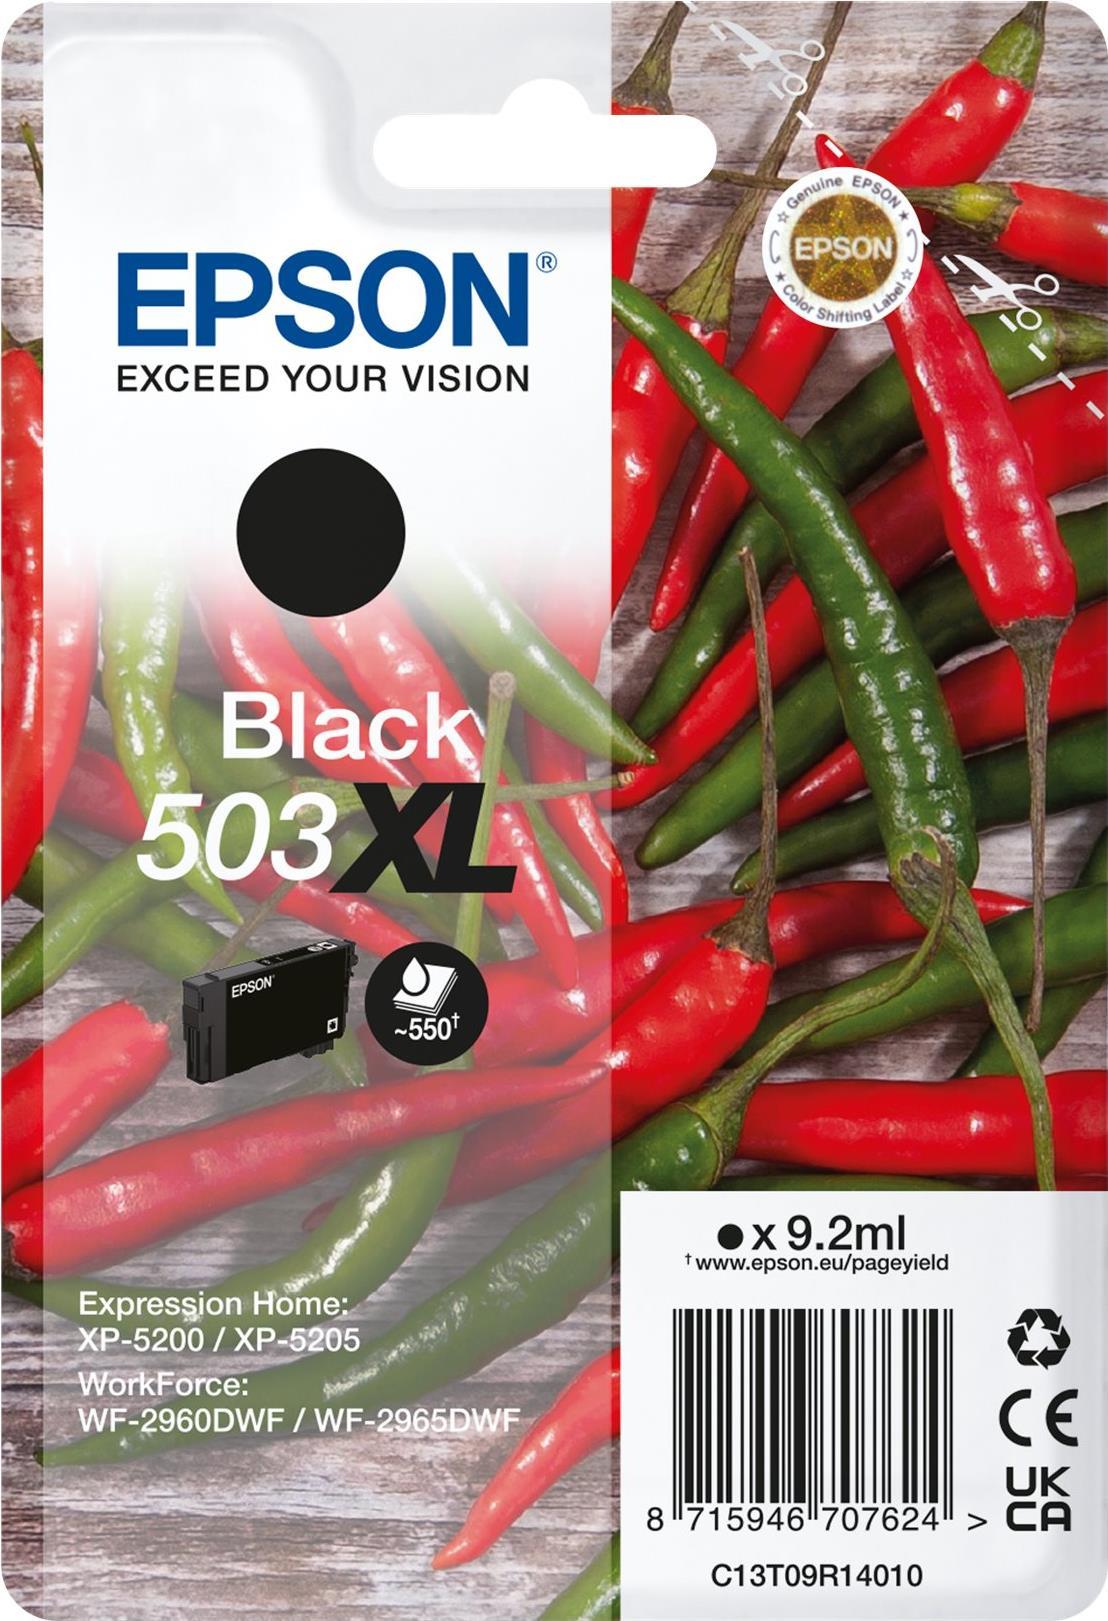 EPSON Tinte schwarz            9.2ml